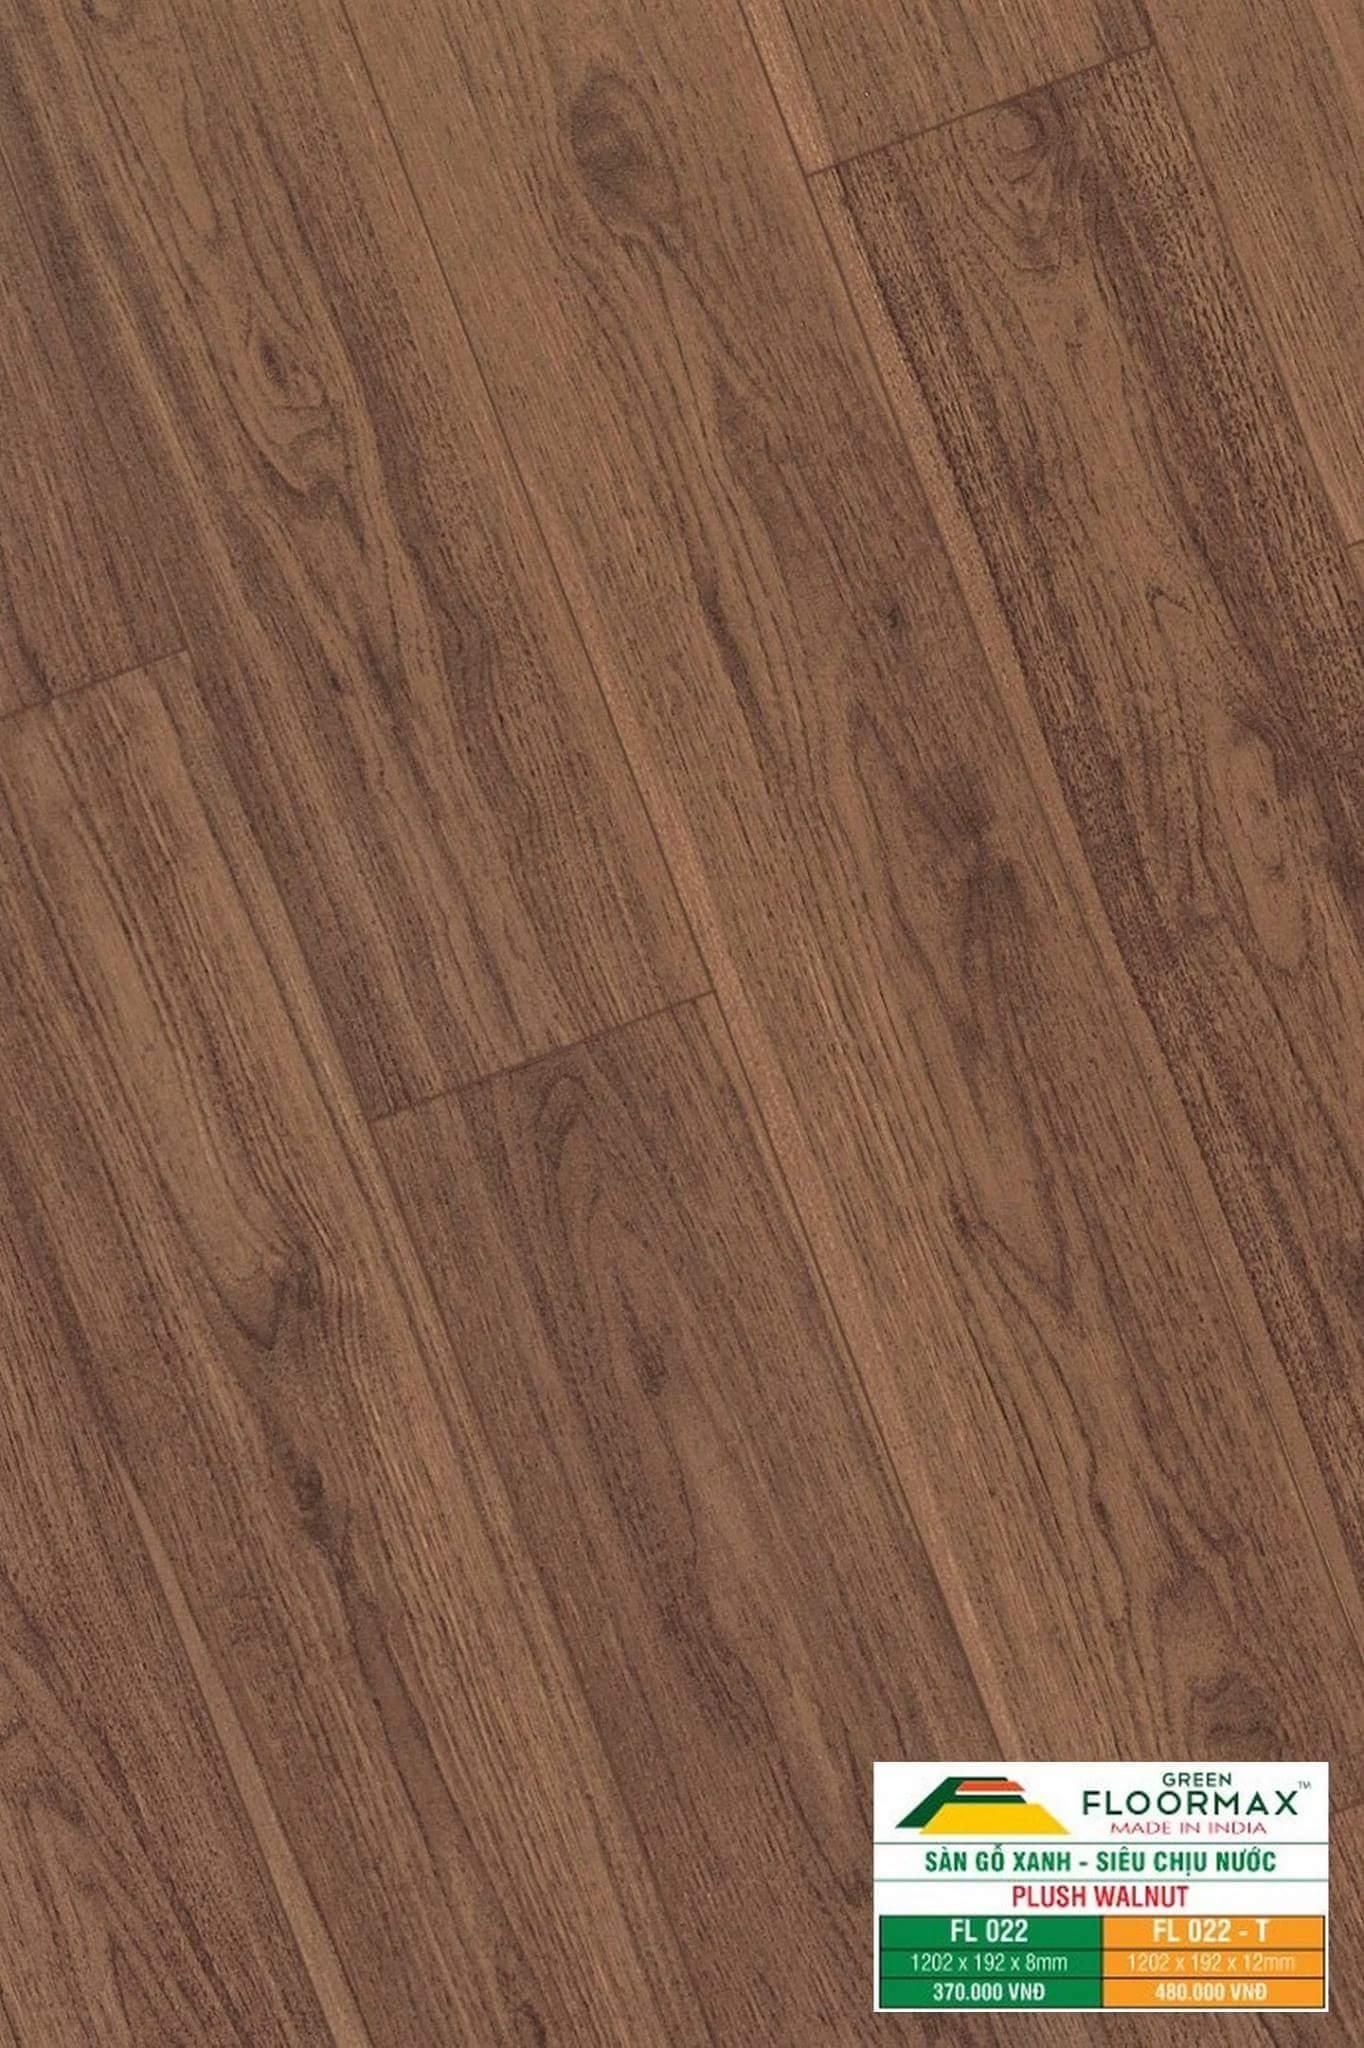 Sàn gỗ Ấn Độ FL 022 